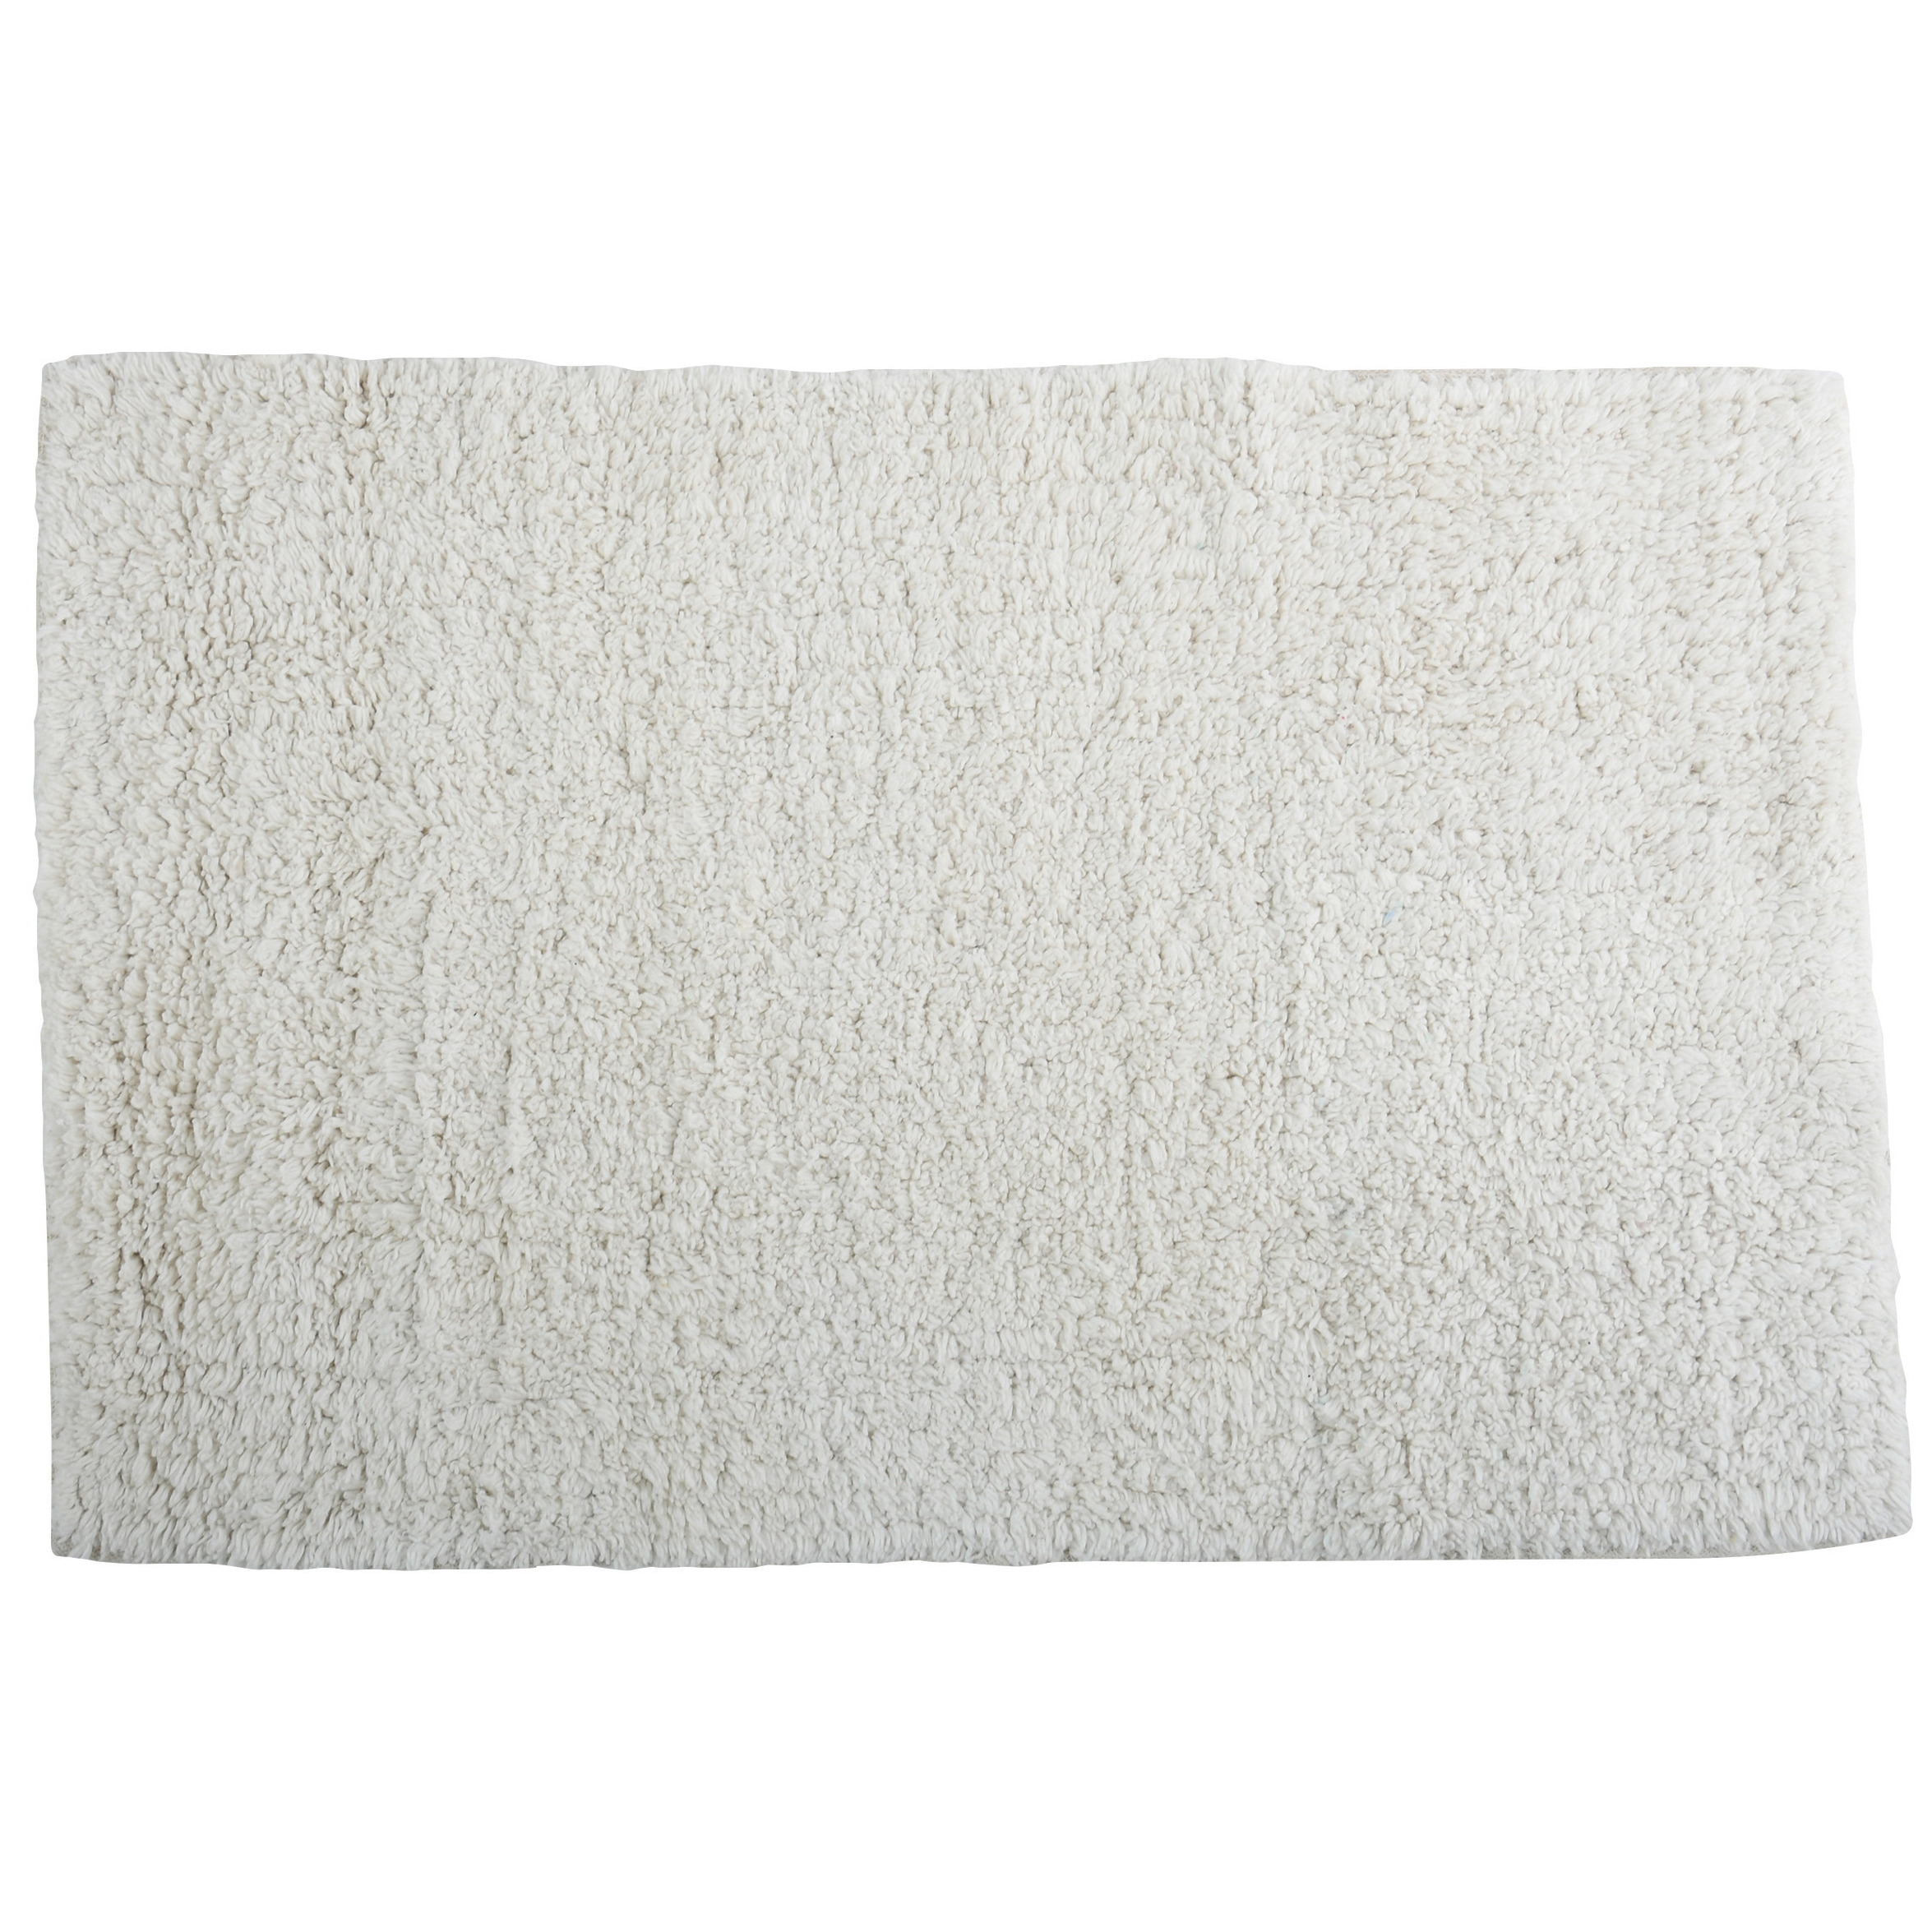 Badkamerkleedje-badmat tapijtje voor op de vloer ivoor wit 45 x 70 cm